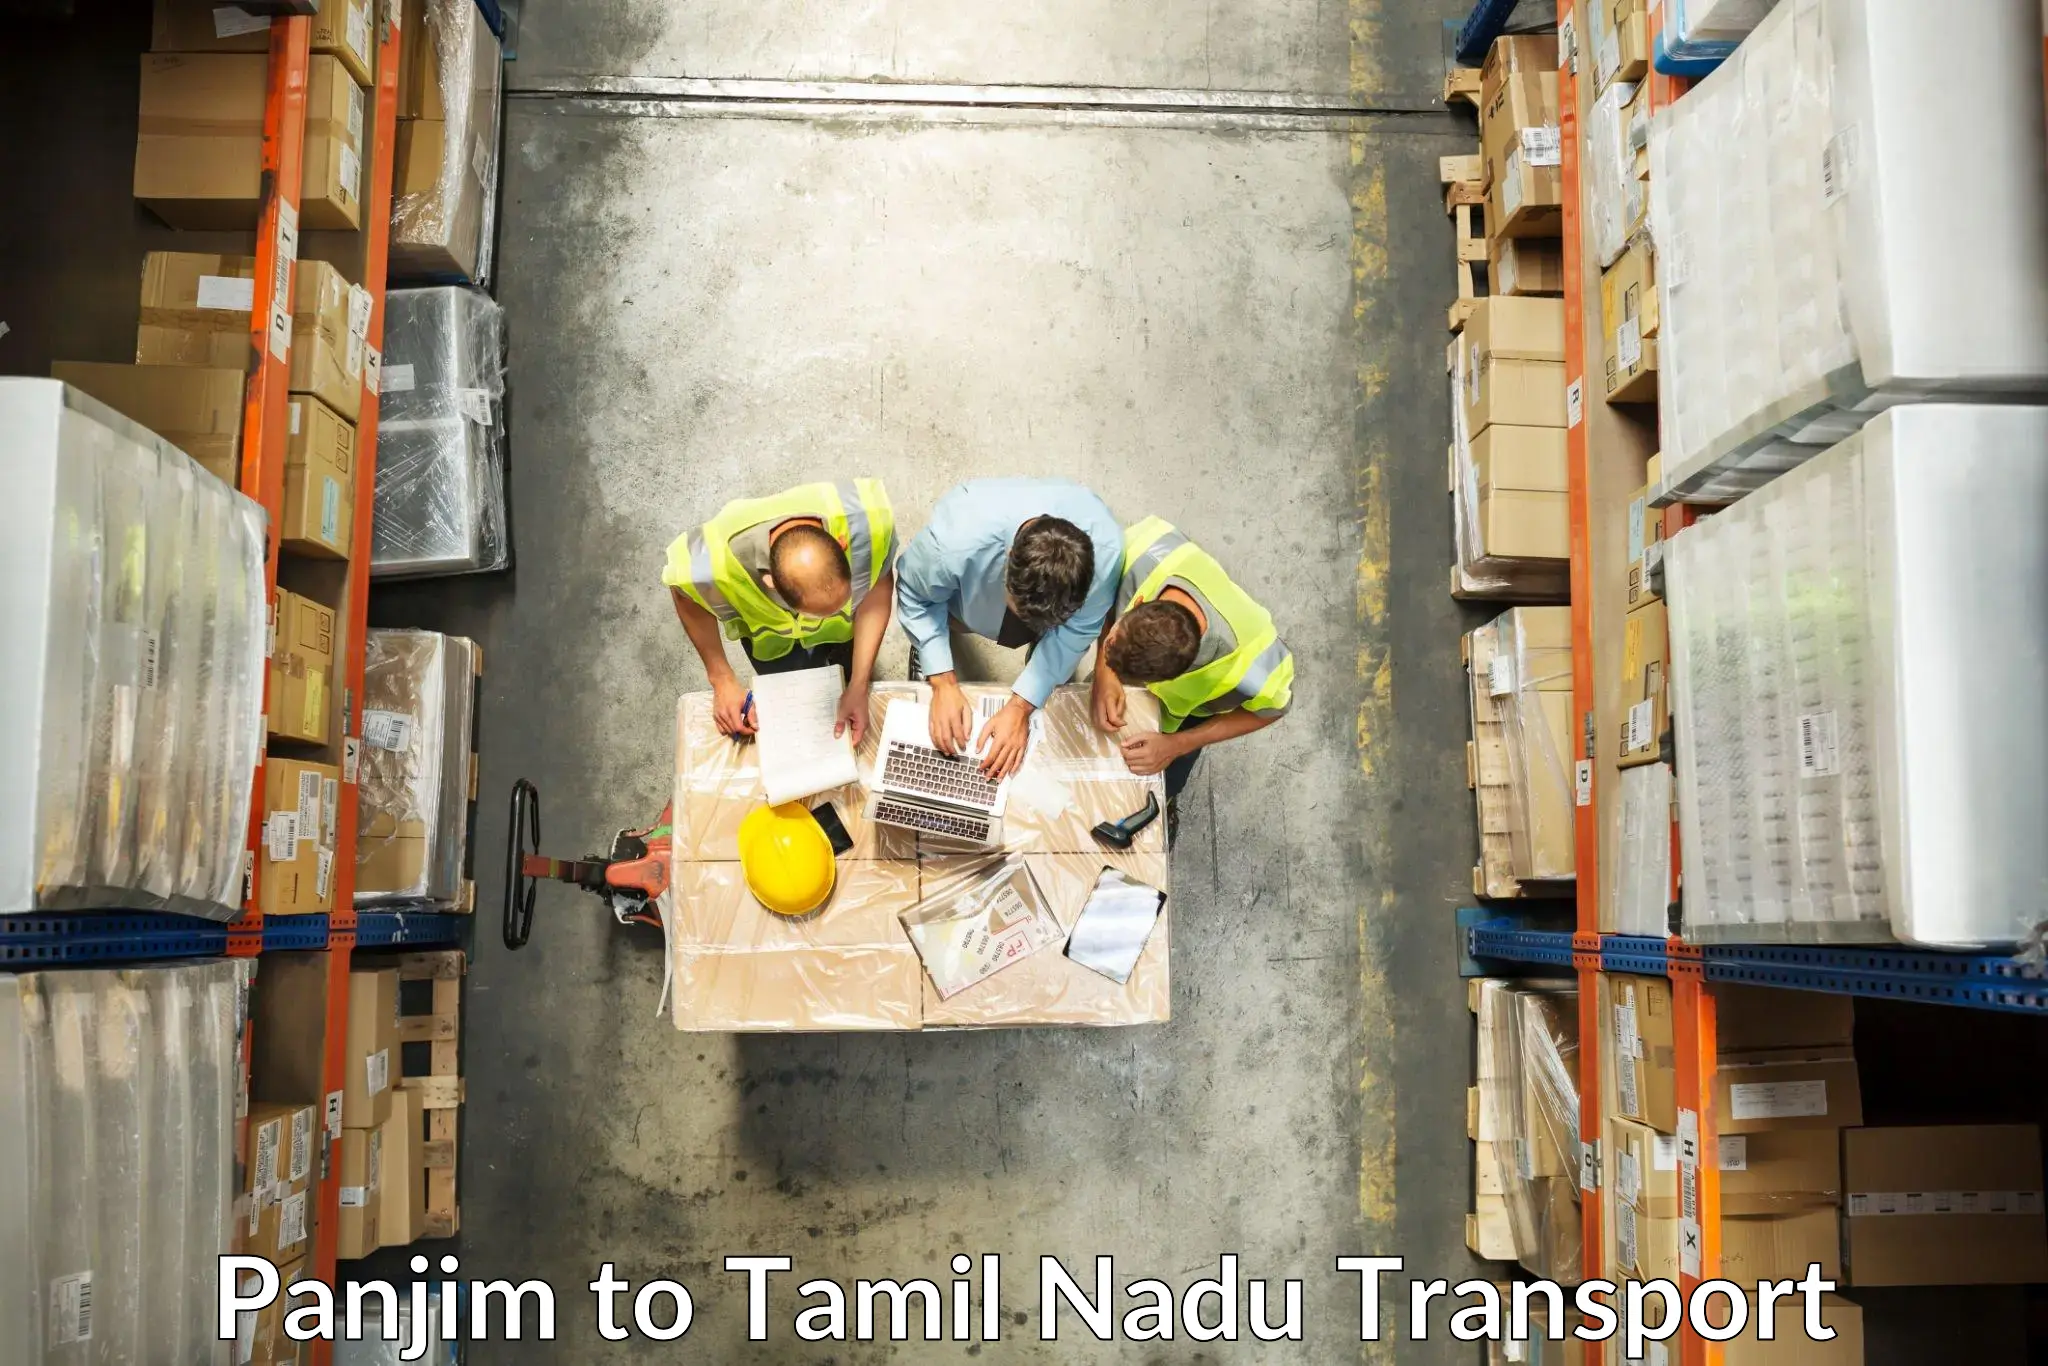 Express transport services Panjim to Tirunelveli